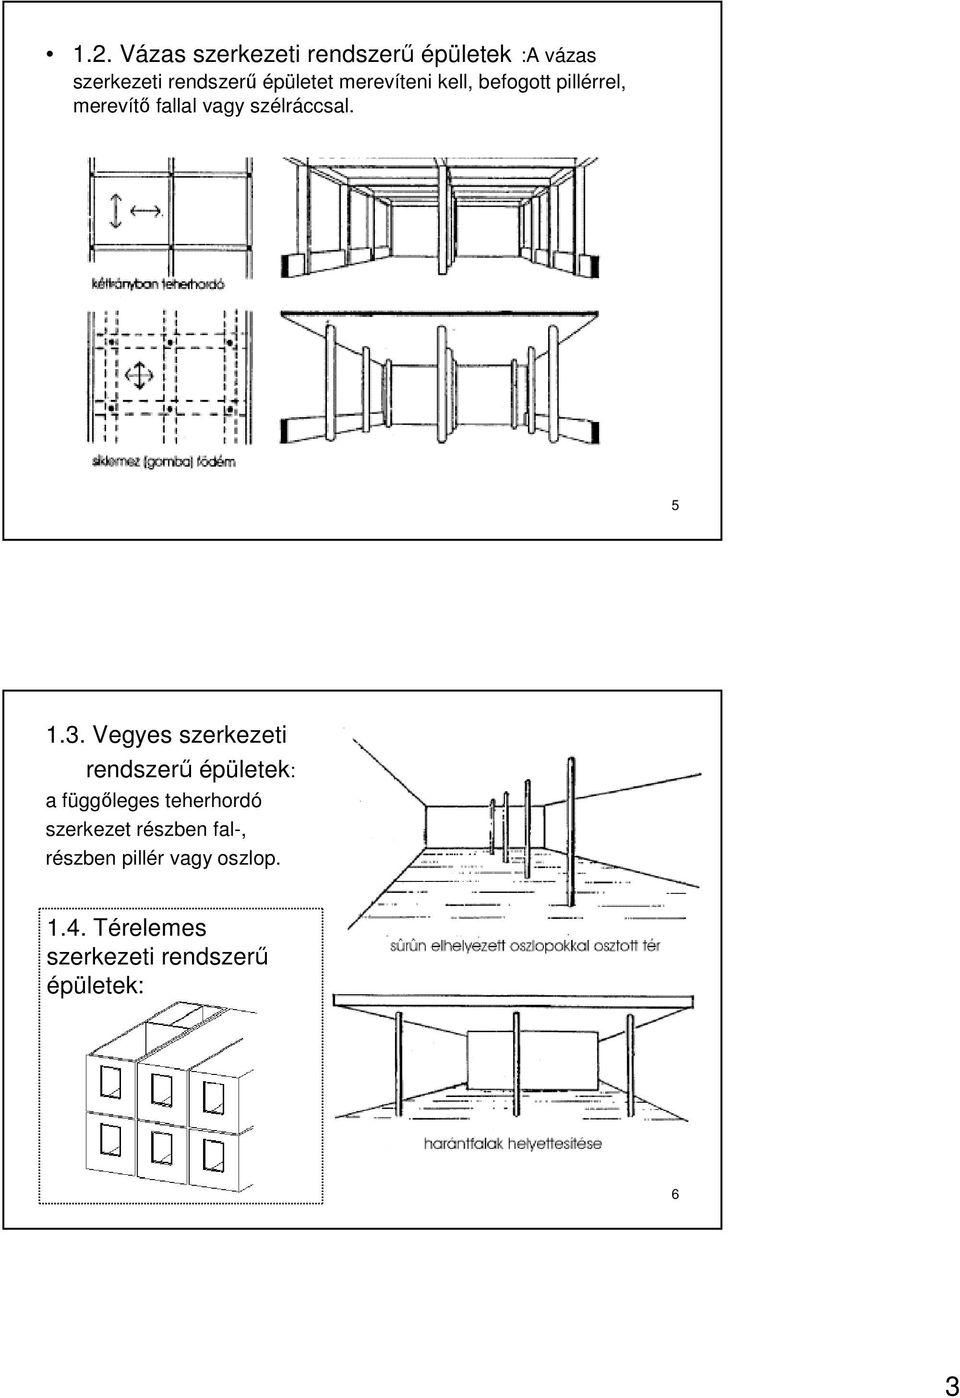 Vegyes szerkezeti rendszerő épületek: a függıleges teherhordó szerkezet részben